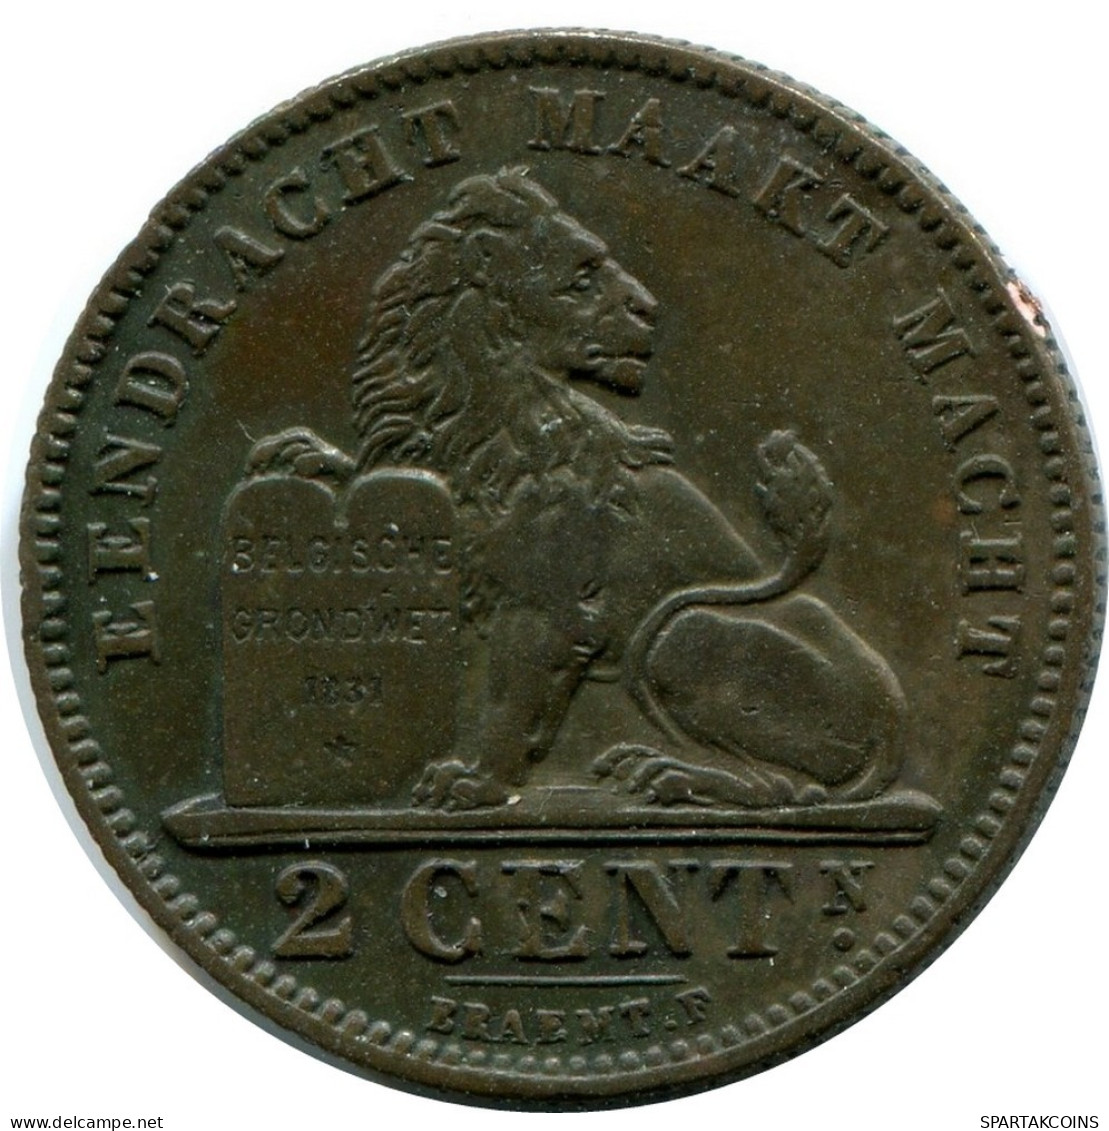 2 CENTIMES 1911 BELGIUM Coin DUTCH Text #AX361.U.A - 2 Cents